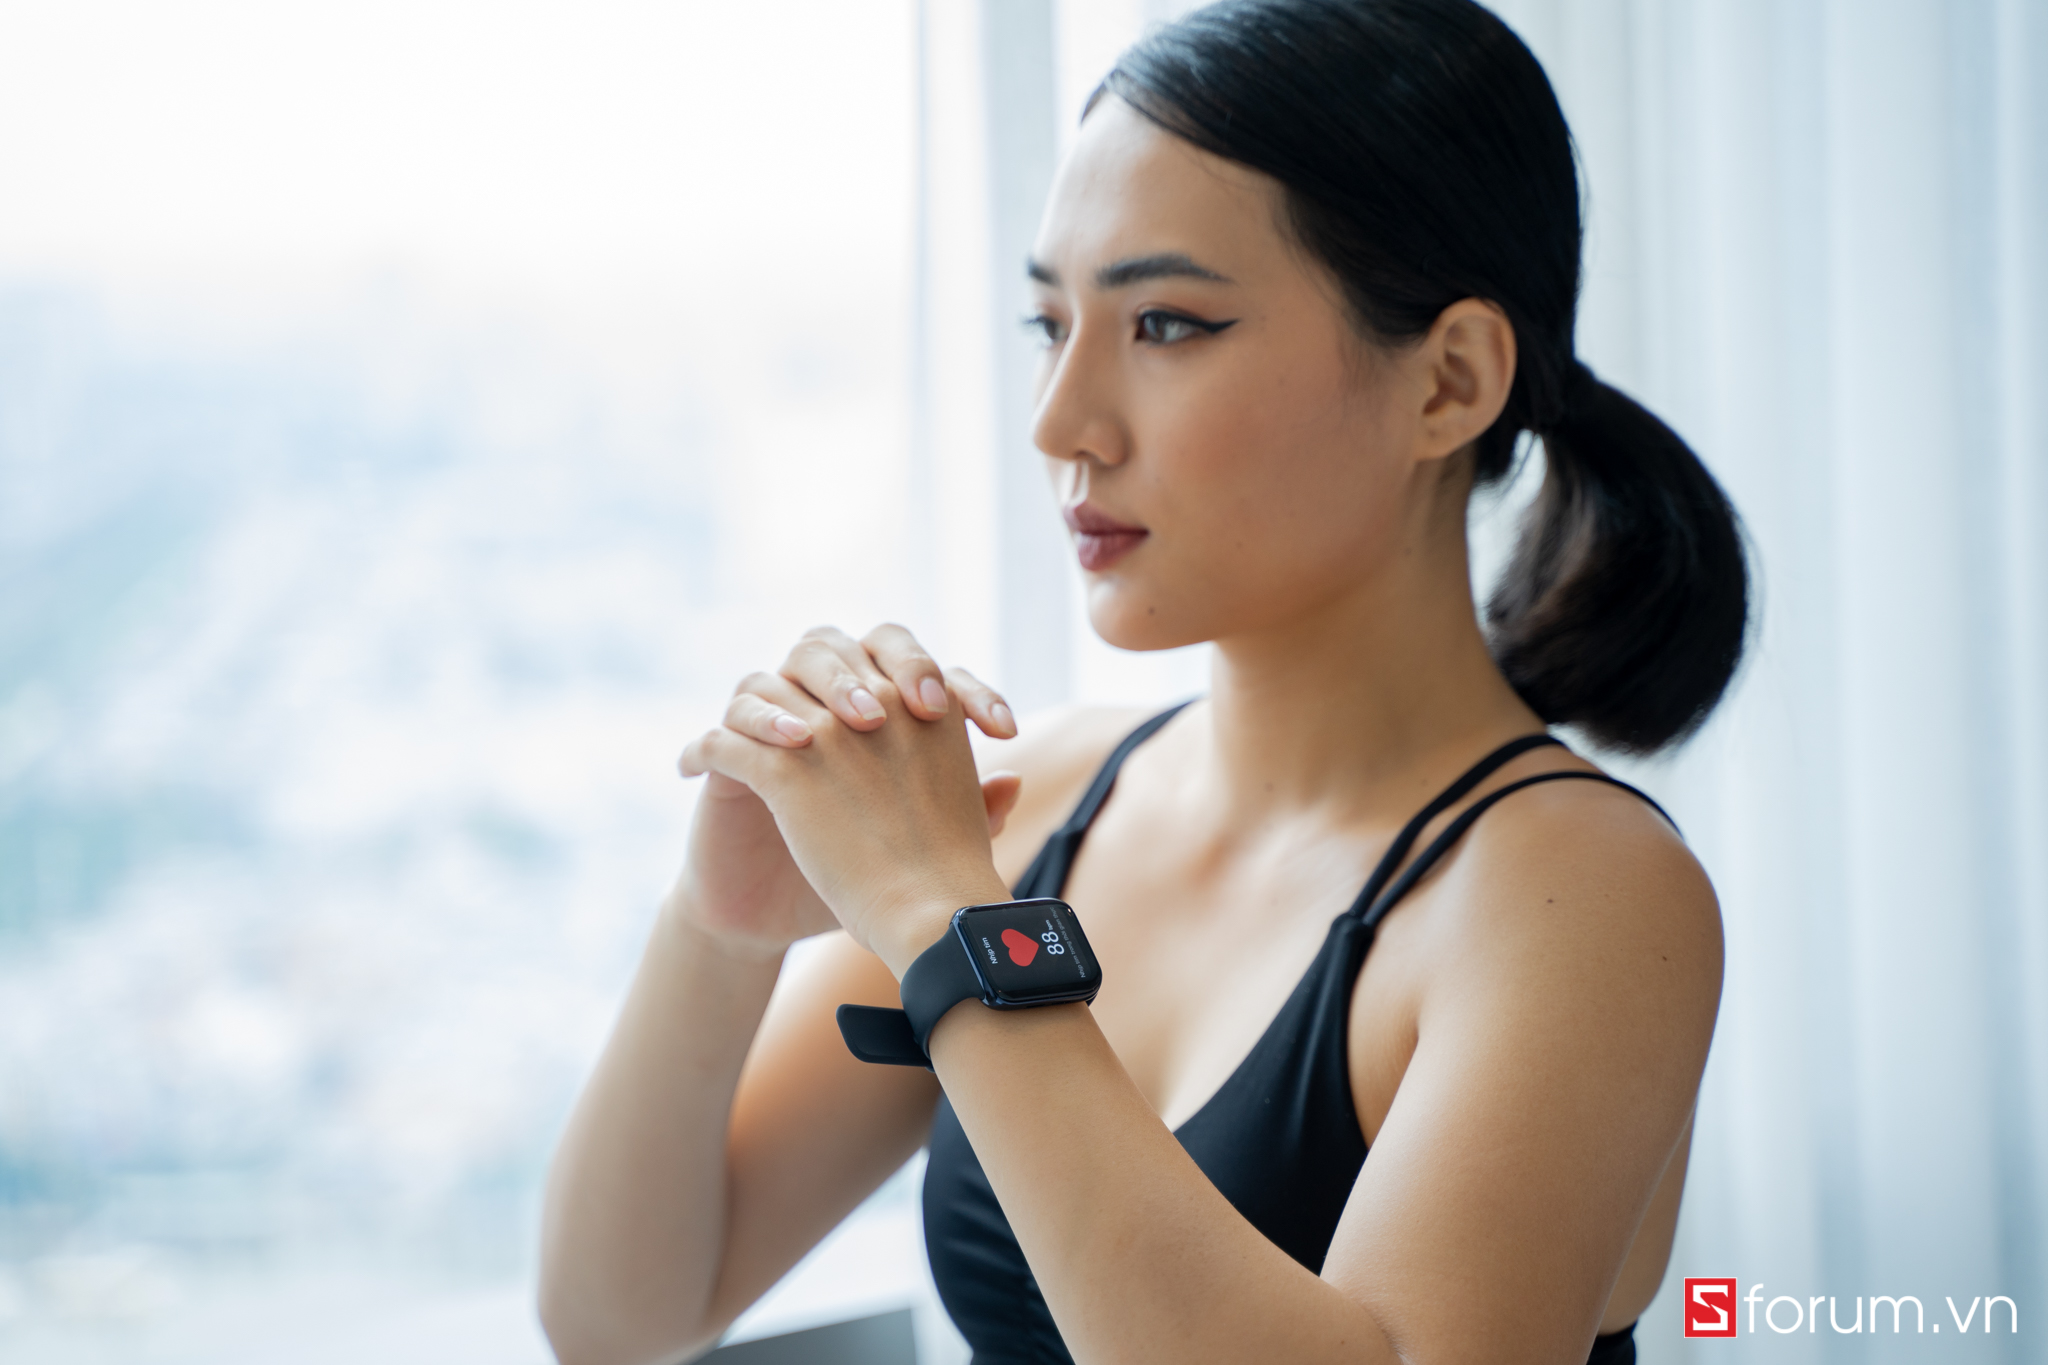 Sforum - Trang thông tin công nghệ mới nhất OPPO-watch-7 Unbox OPPO Watch: Ngoại hình bắt mắt, 2 phiên bản 41mm và 46mm, ra mắt chính thức tại Việt Nam vào ngày 1/8 